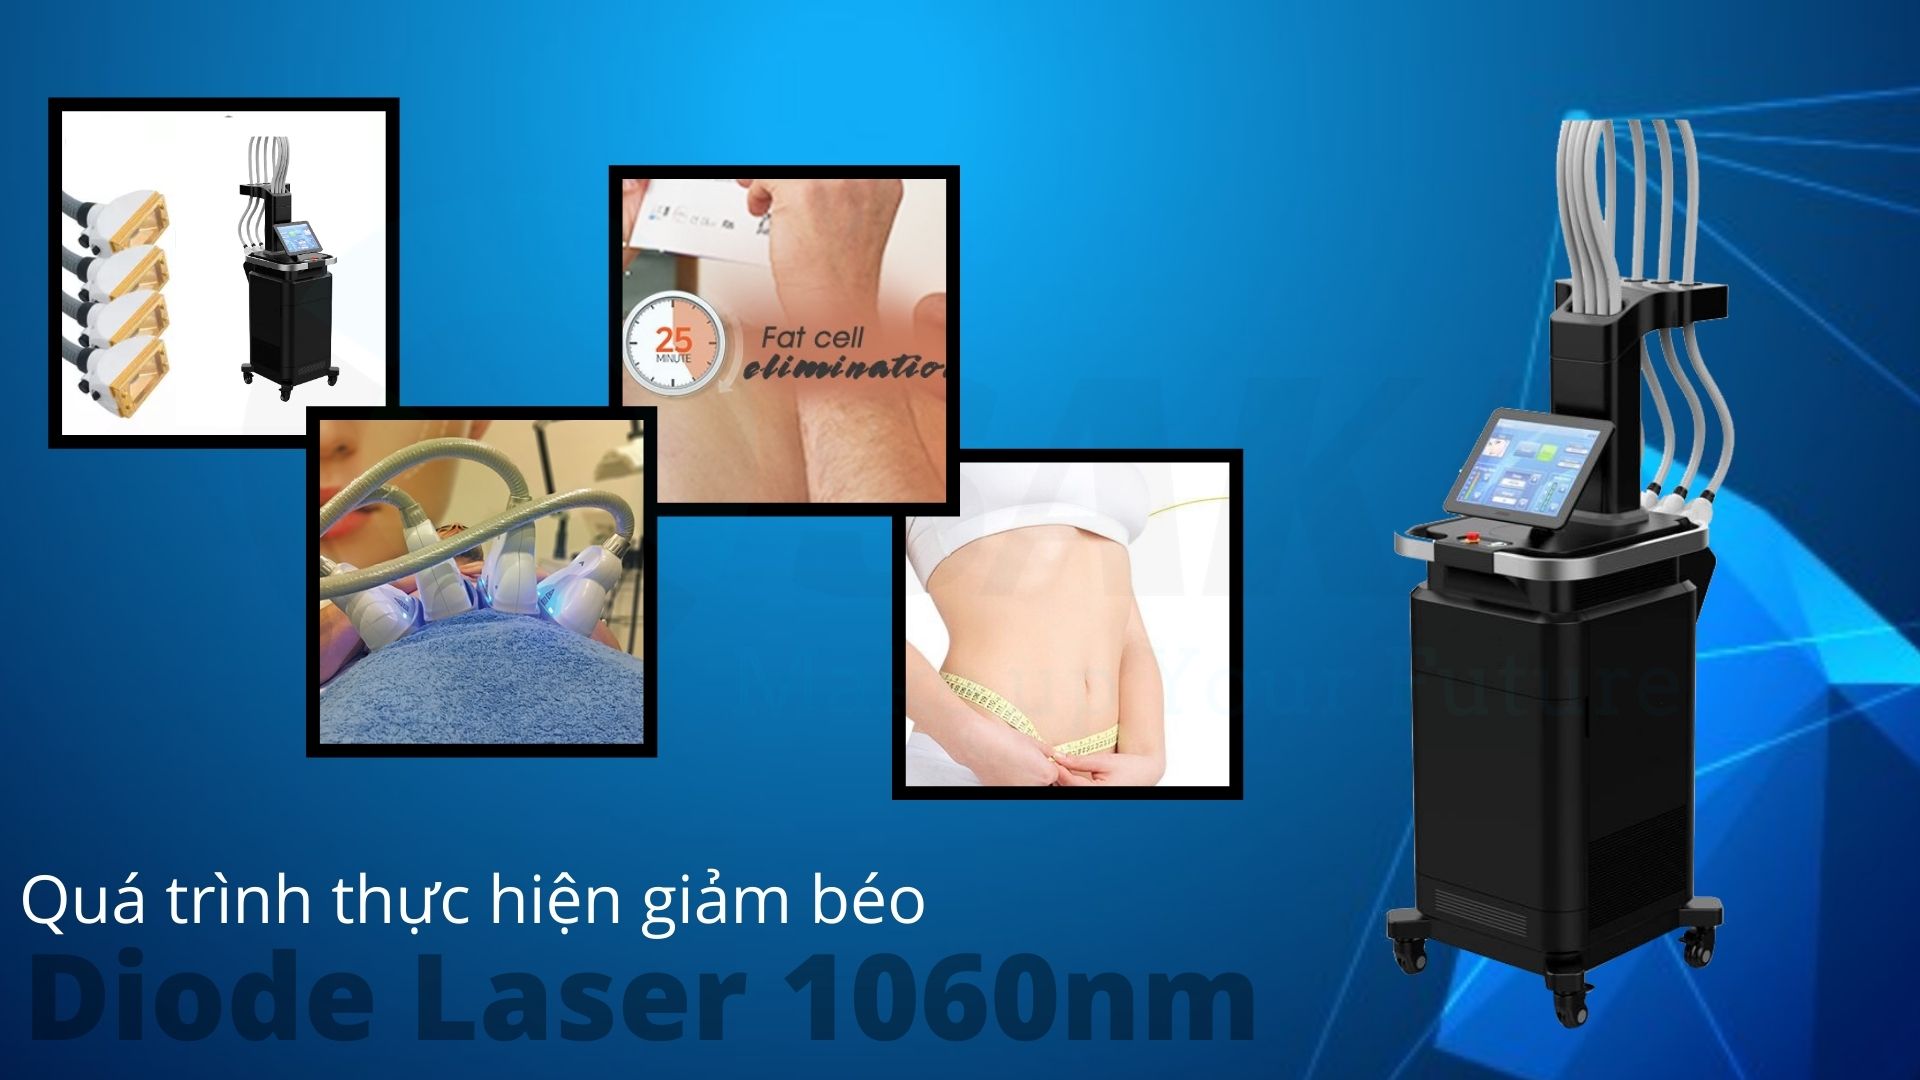 Quá trình thực hiện giảm béo diode laser 1060nm